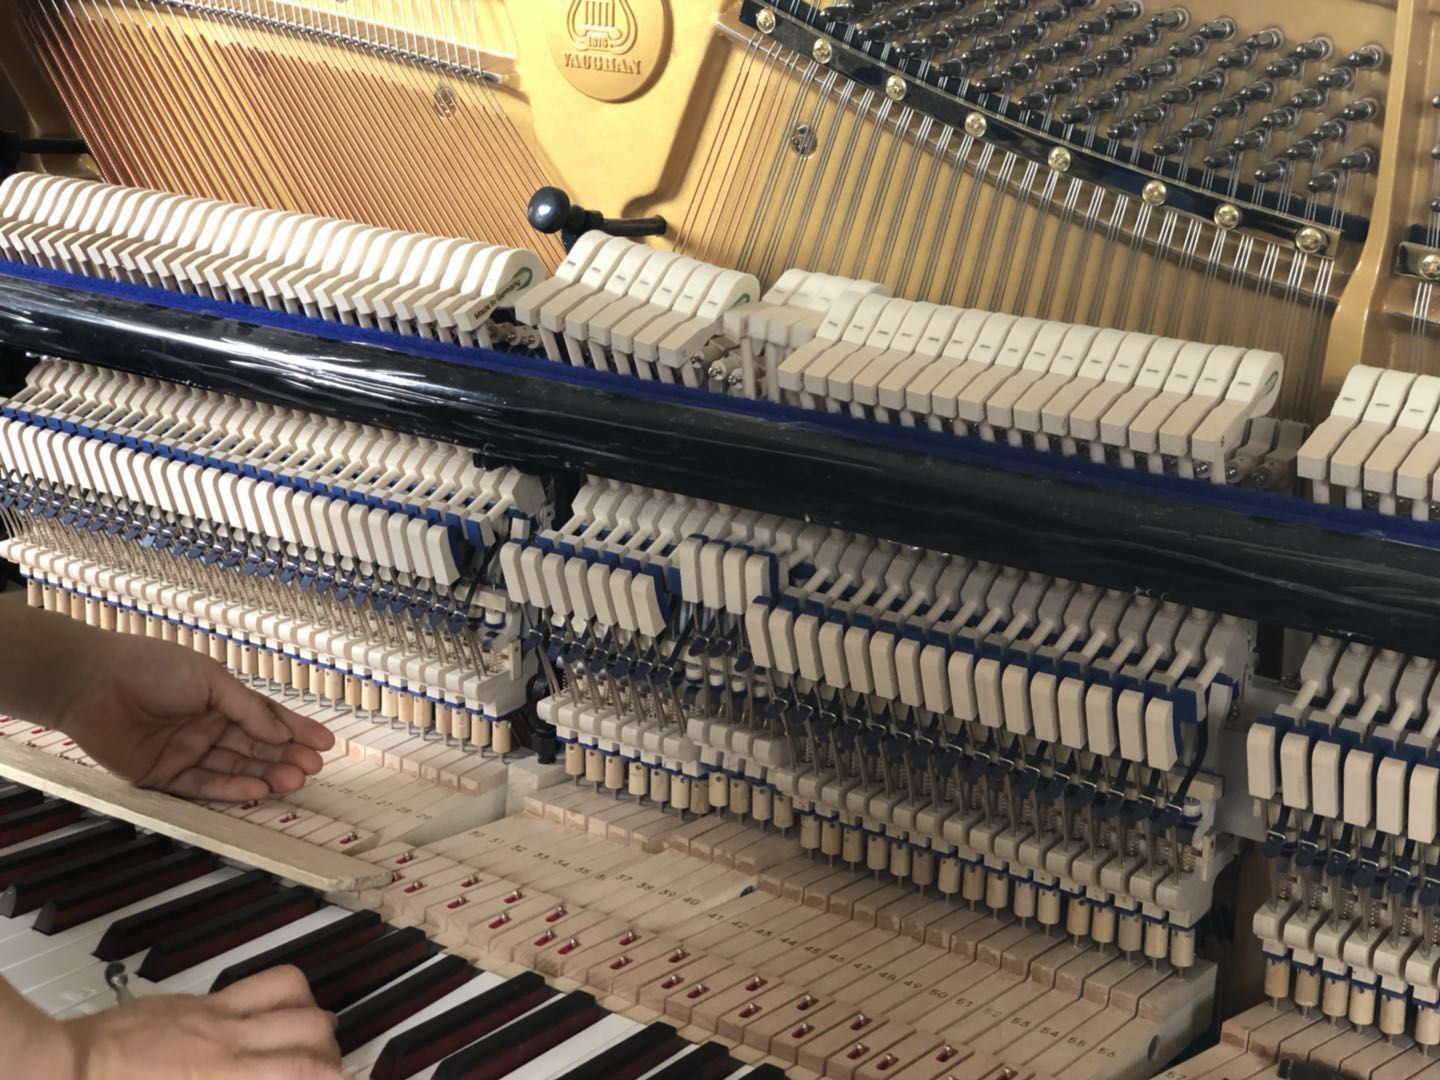 Hướng dẫn chi tiết nhất về cách kiểm tra đàn Piano cũ trước khi mua